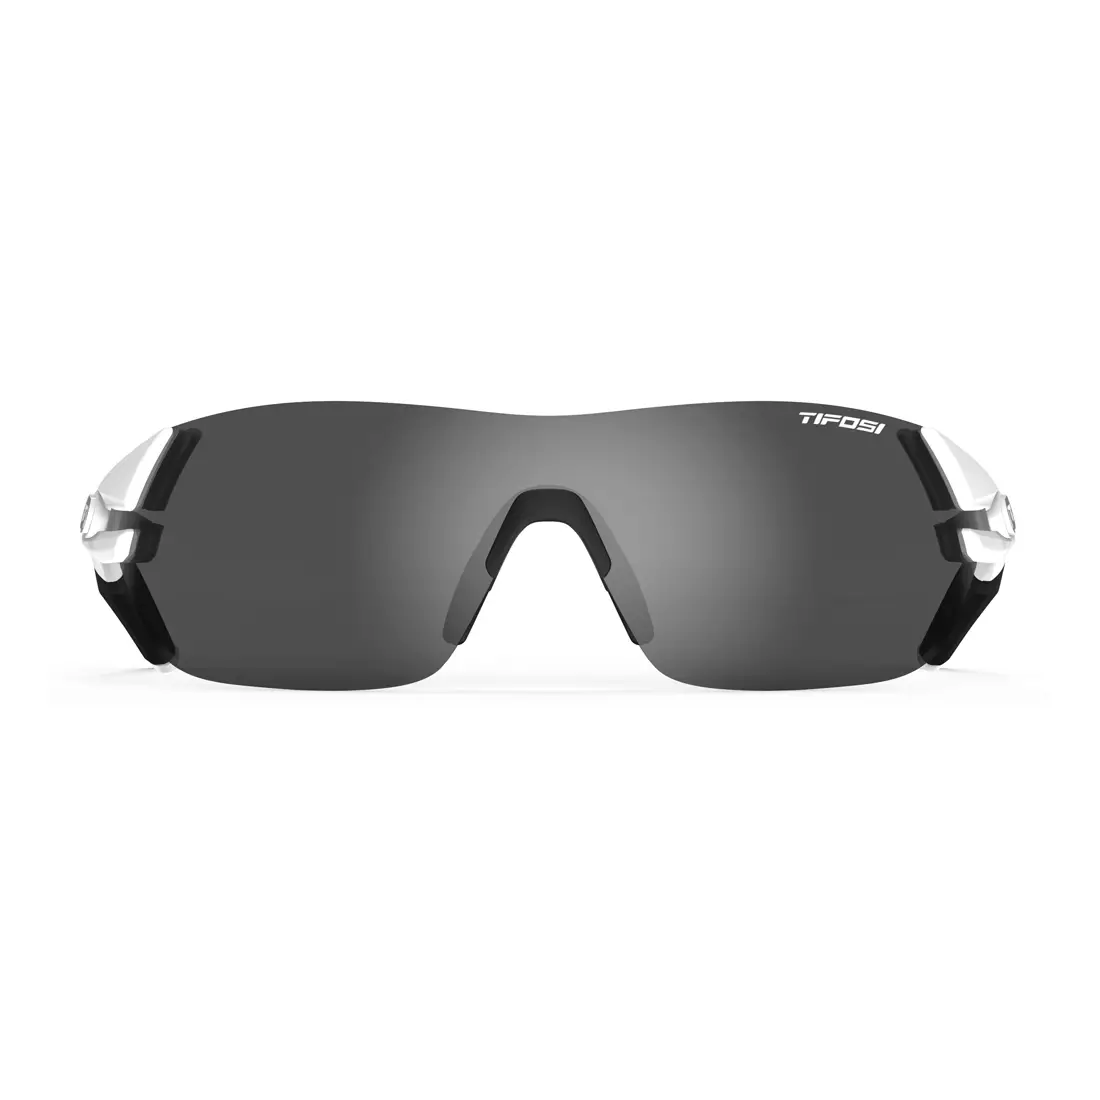 TIFOSI Sportbrillen mit austauschbaren Gläsern slice matte white (Smoke, AC Red, Clear) TFI-1600101270